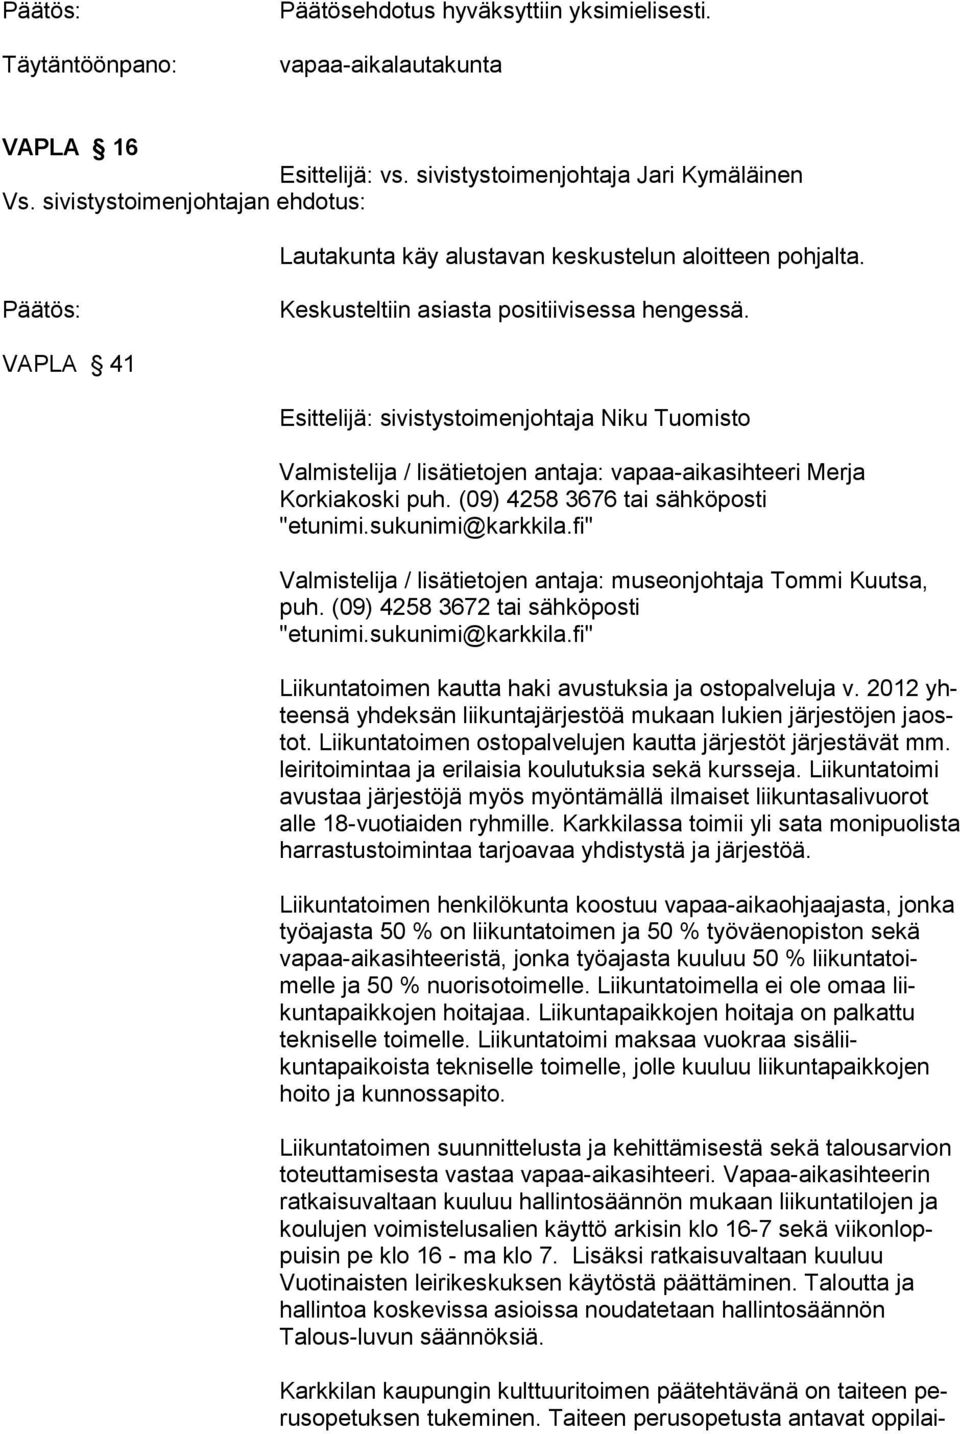 VAPLA 41 Esittelijä: sivistystoimenjohtaja Niku Tuomisto Valmistelija / lisätietojen antaja: vapaa-aikasihteeri Merja Korkiakoski puh. (09) 4258 3676 tai sähköposti "etunimi.sukunimi@karkkila.